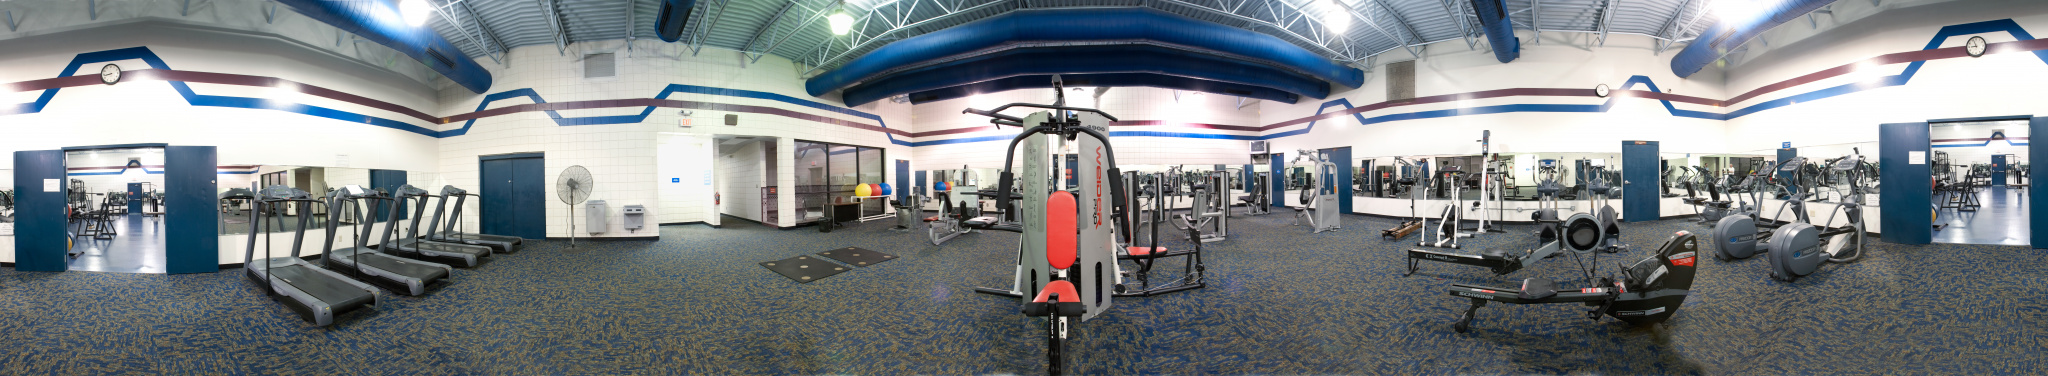 Fremont Fitness Center interior 2009